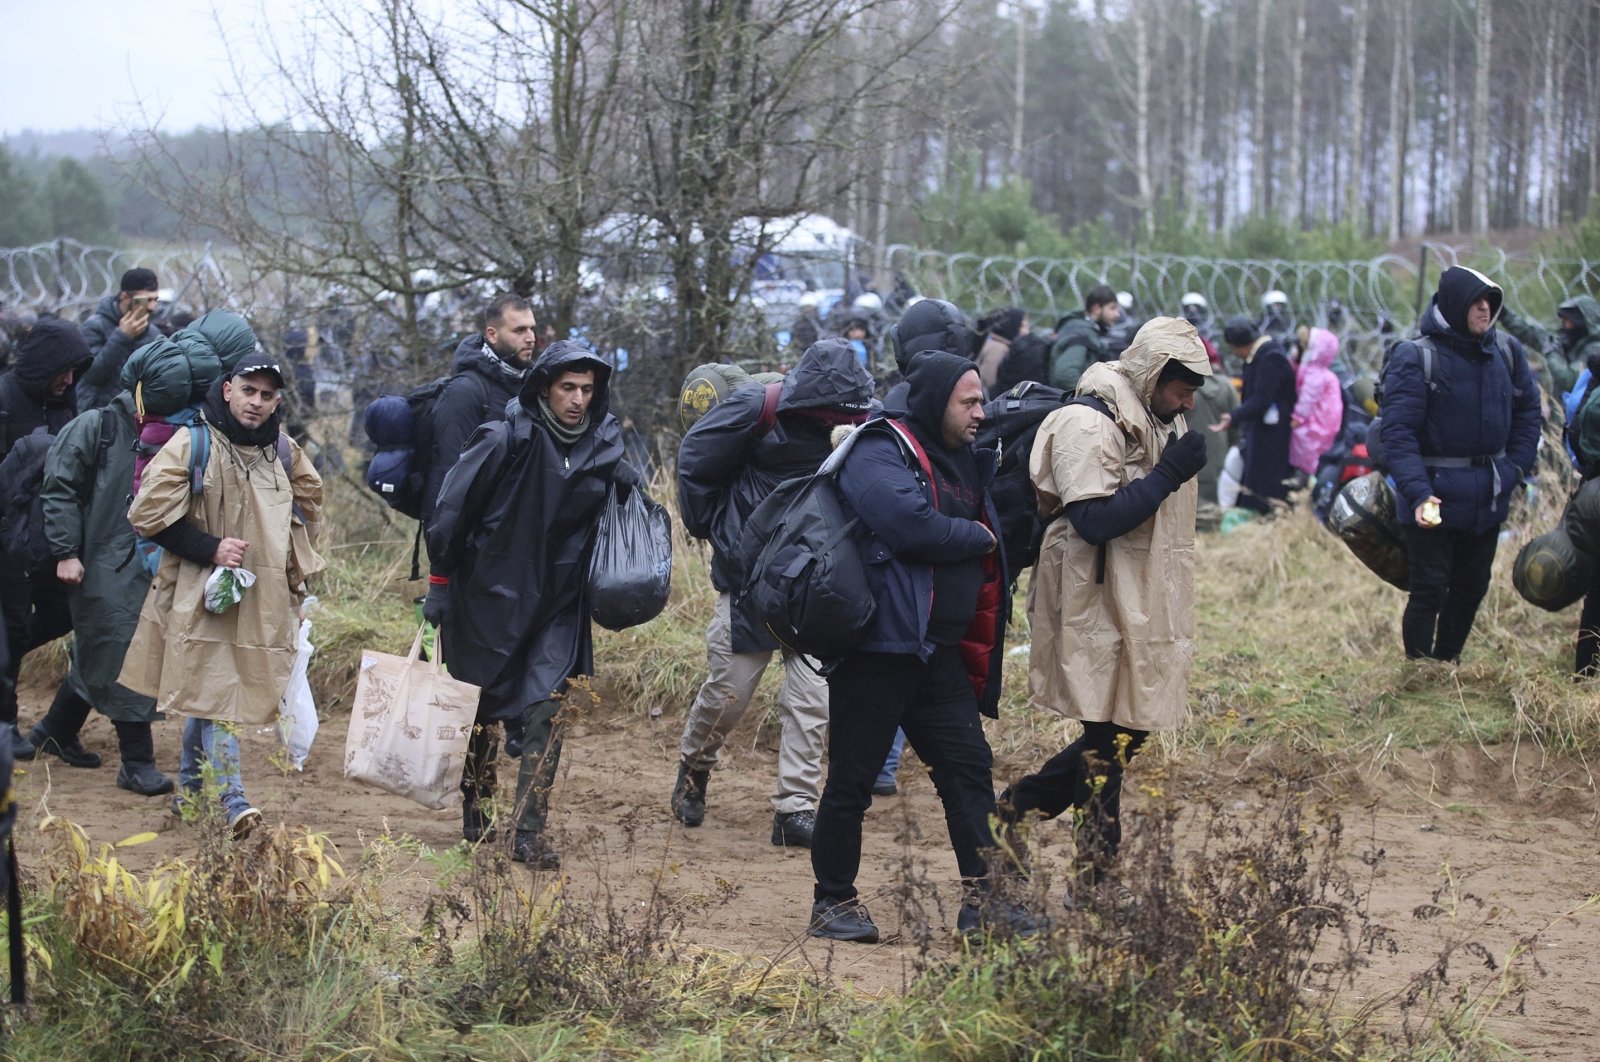 Ketegangan tinggi saat Polandia memblokir ratusan migran di perbatasan Belarusia